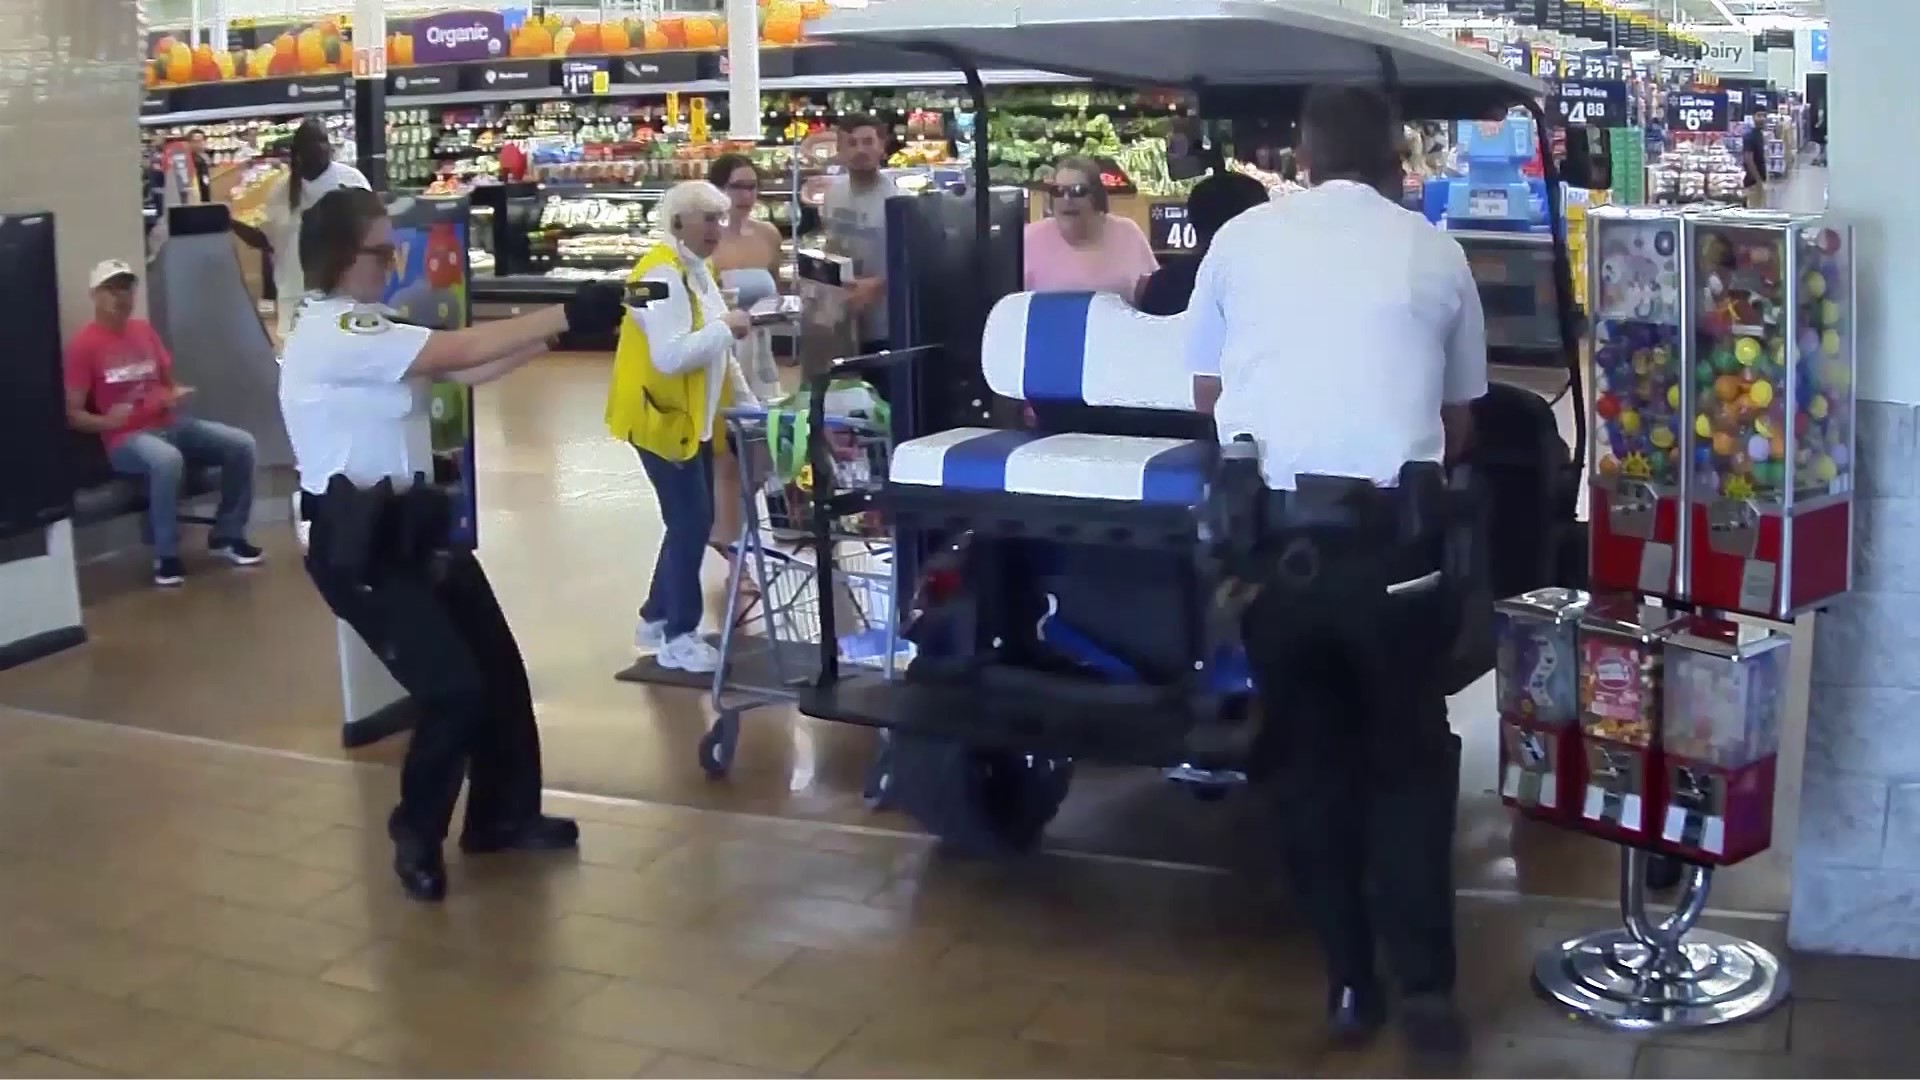 Florida Man Drives Golf Cart into Walmart During Liquor Dispute